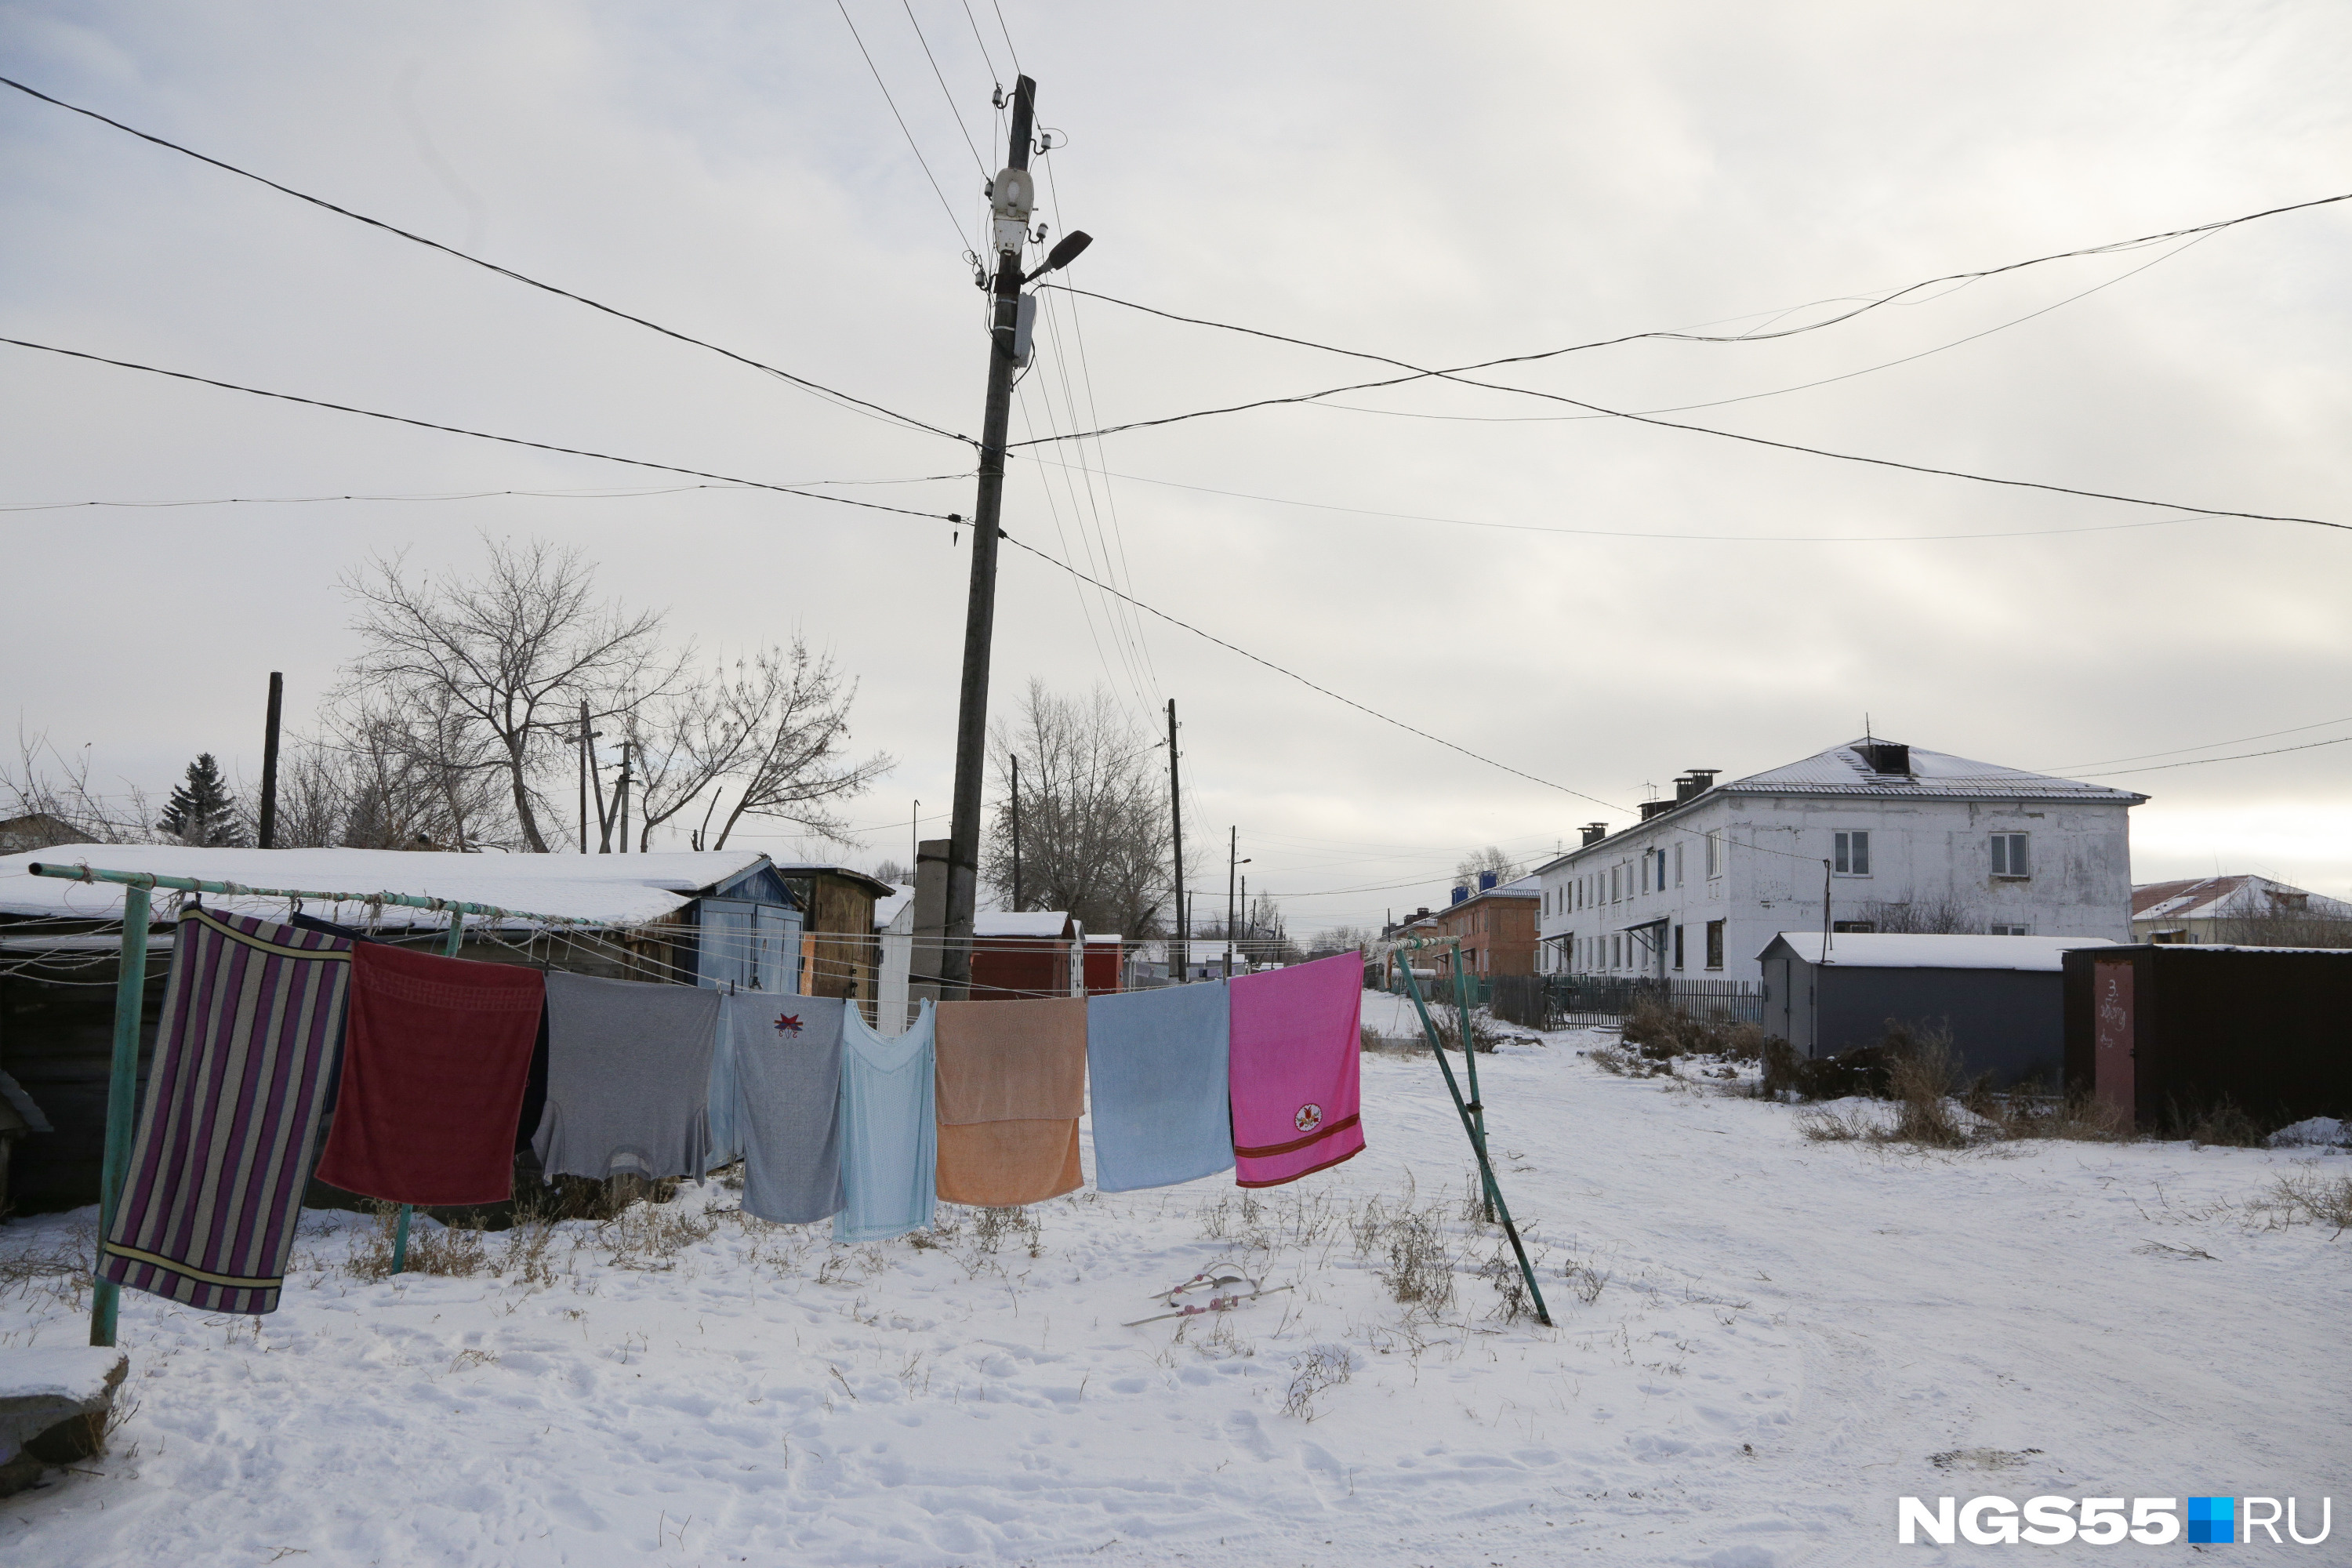 Жители села привыкли вывешивать белье на улице даже в морозную погоду